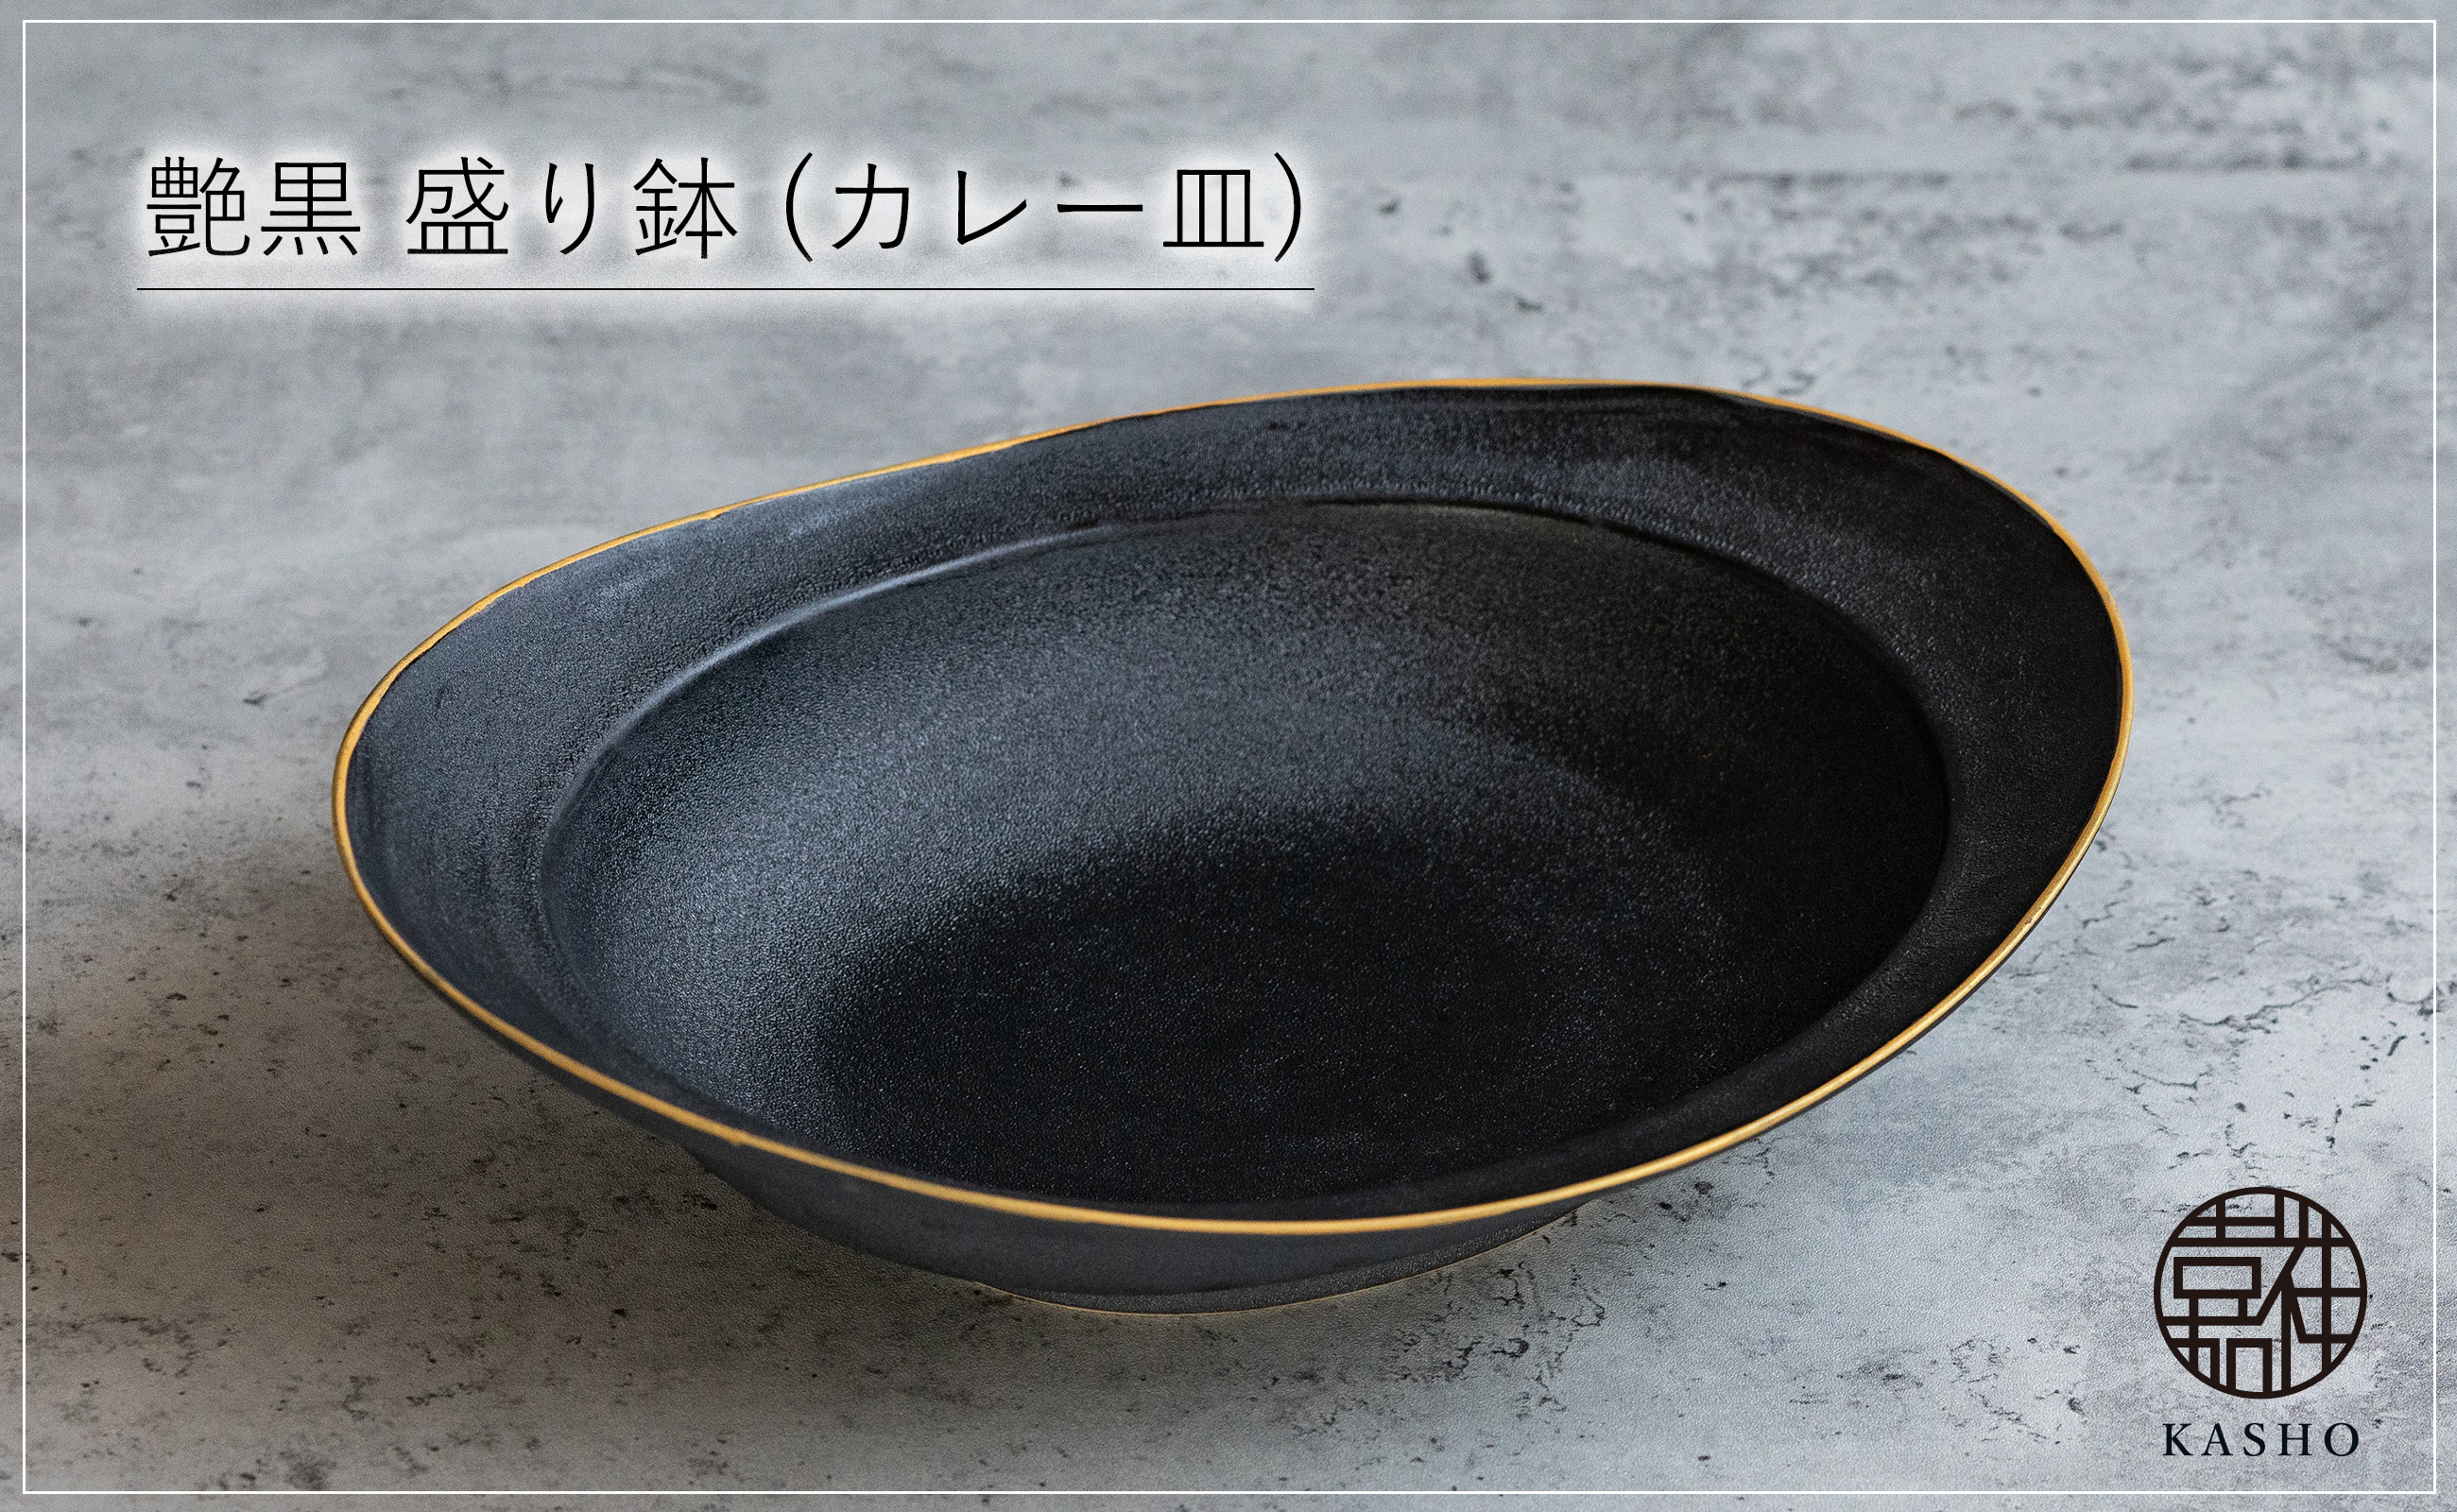 〈平戸嘉祥窯〉艶黒 盛り鉢 (カレー皿) 1個 カレー皿 パスタ皿 盛り皿 食器 皿